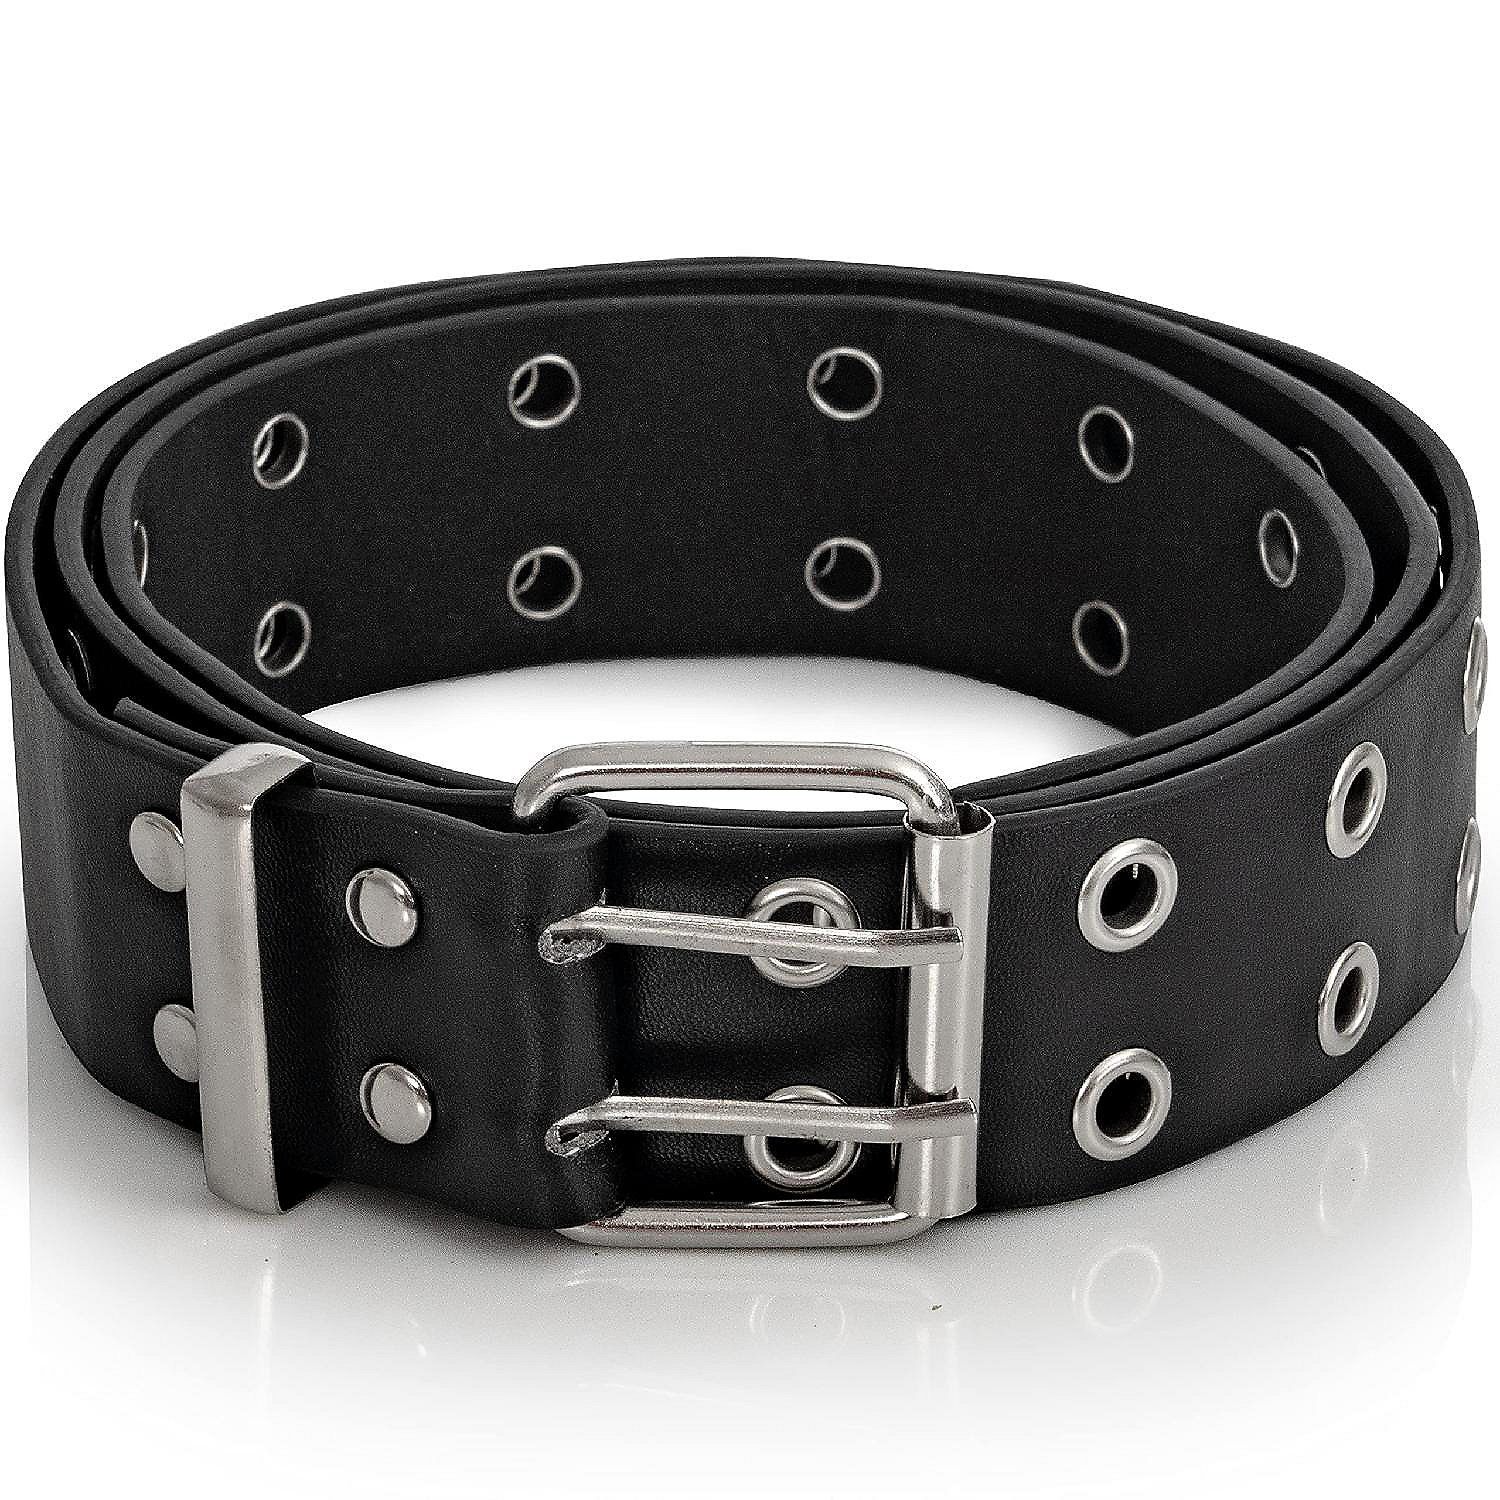 Double Grommet Punk Belt - Black Faux Leather 2 Prong and Holes